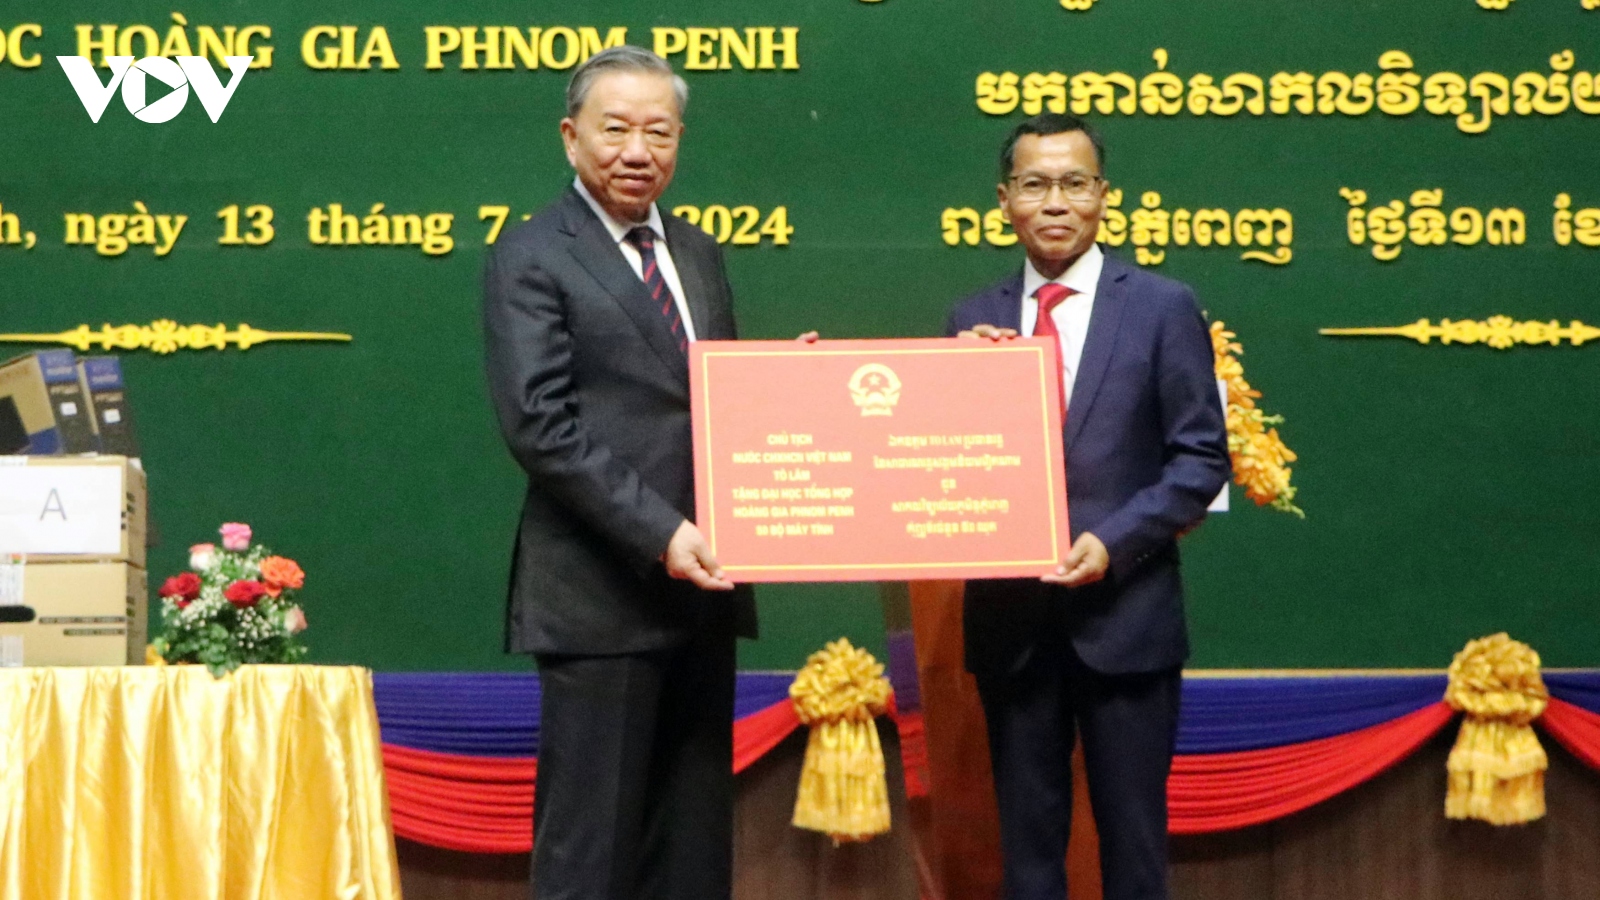 Hợp tác phát triển nguồn nhân lực góp phần thúc đẩy quan hệ Việt Nam - Campuchia